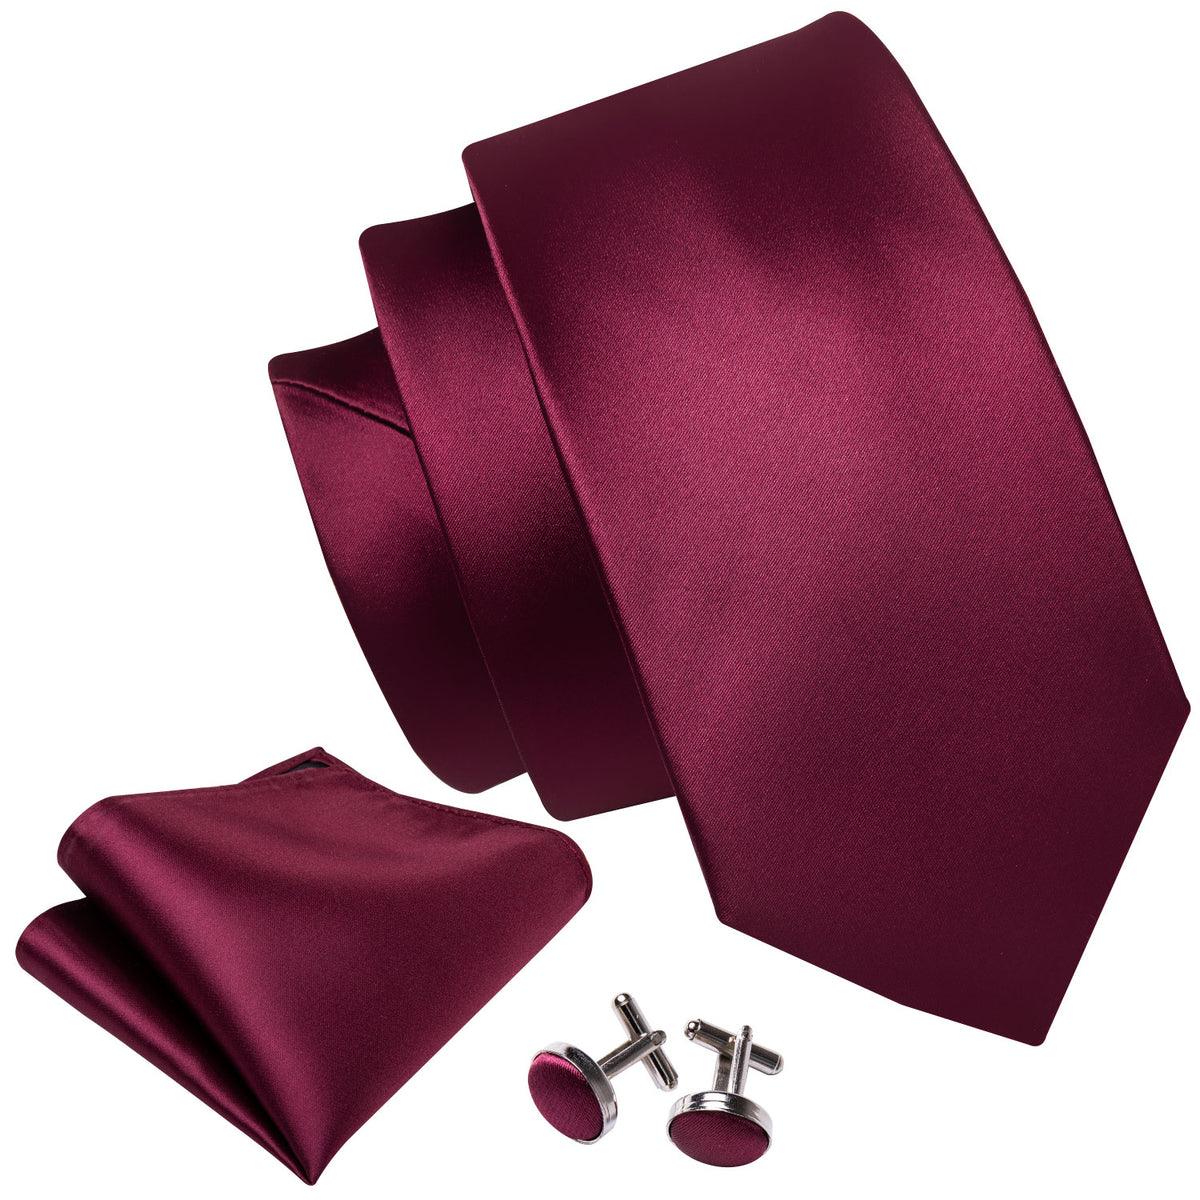 Vivid Burgundy Solid Silk Tie Pocket Square Cufflink Set - STYLETIE